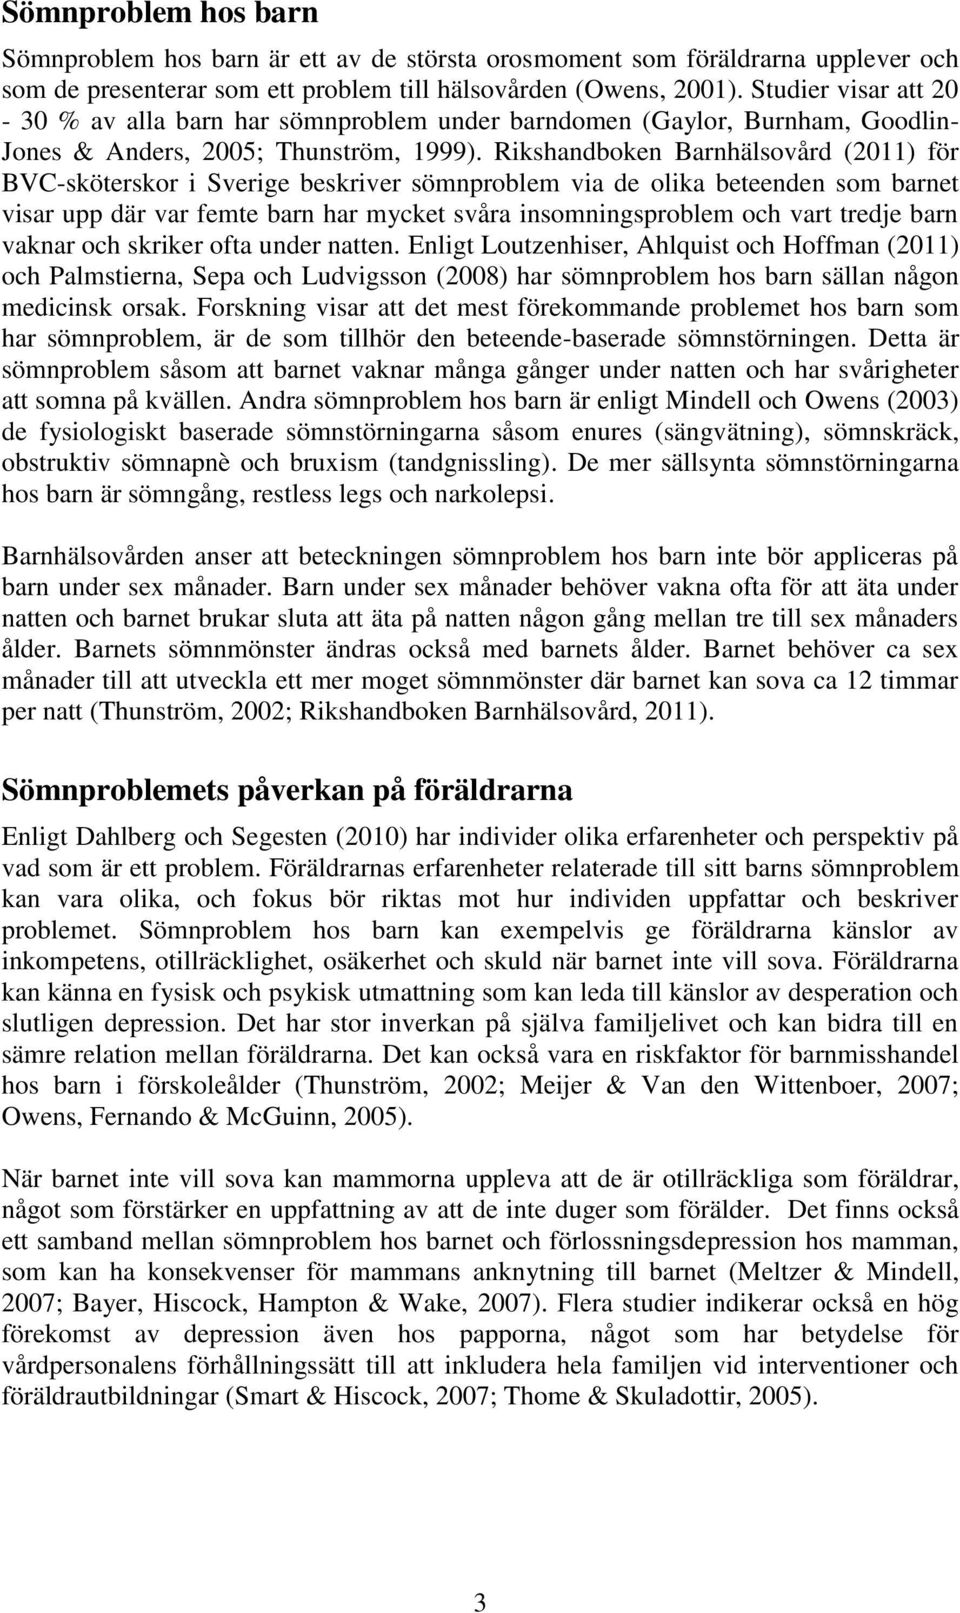 Rikshandboken Barnhälsovård (2011) för BVC-sköterskor i Sverige beskriver sömnproblem via de olika beteenden som barnet visar upp där var femte barn har mycket svåra insomningsproblem och vart tredje